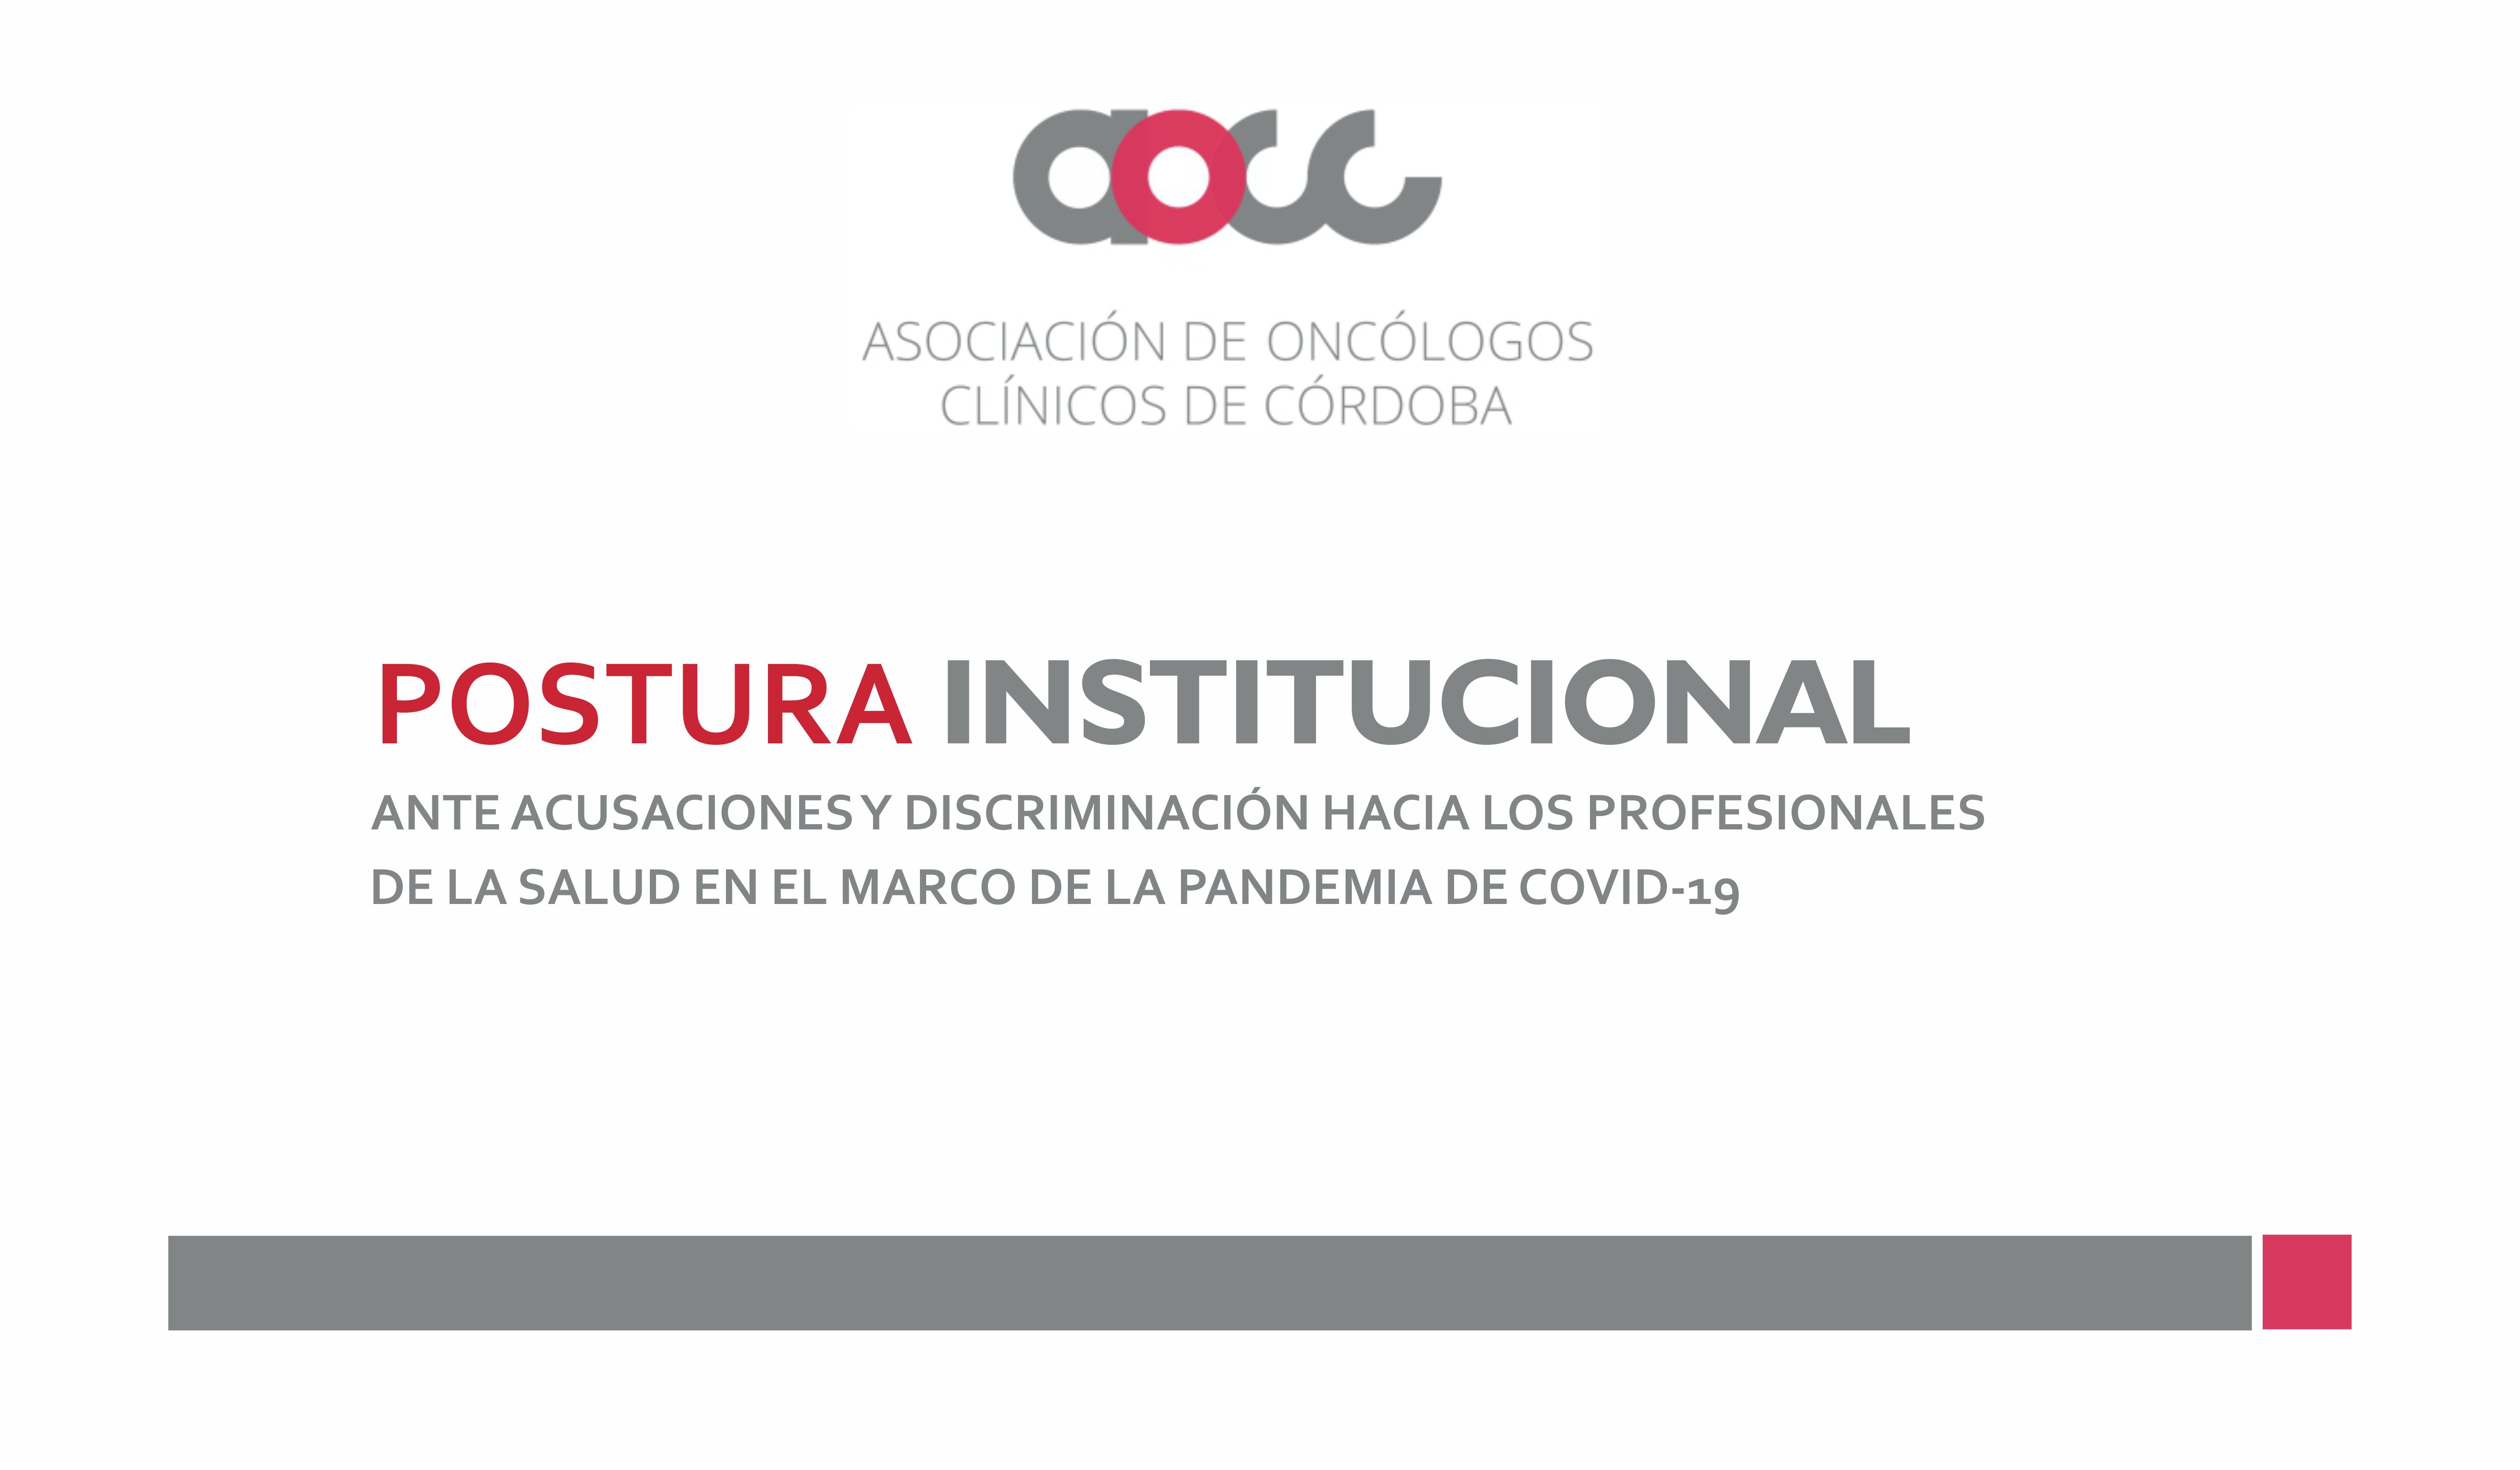 Postura institucional de la AOCC en el marco de la pandemia de COVID-19